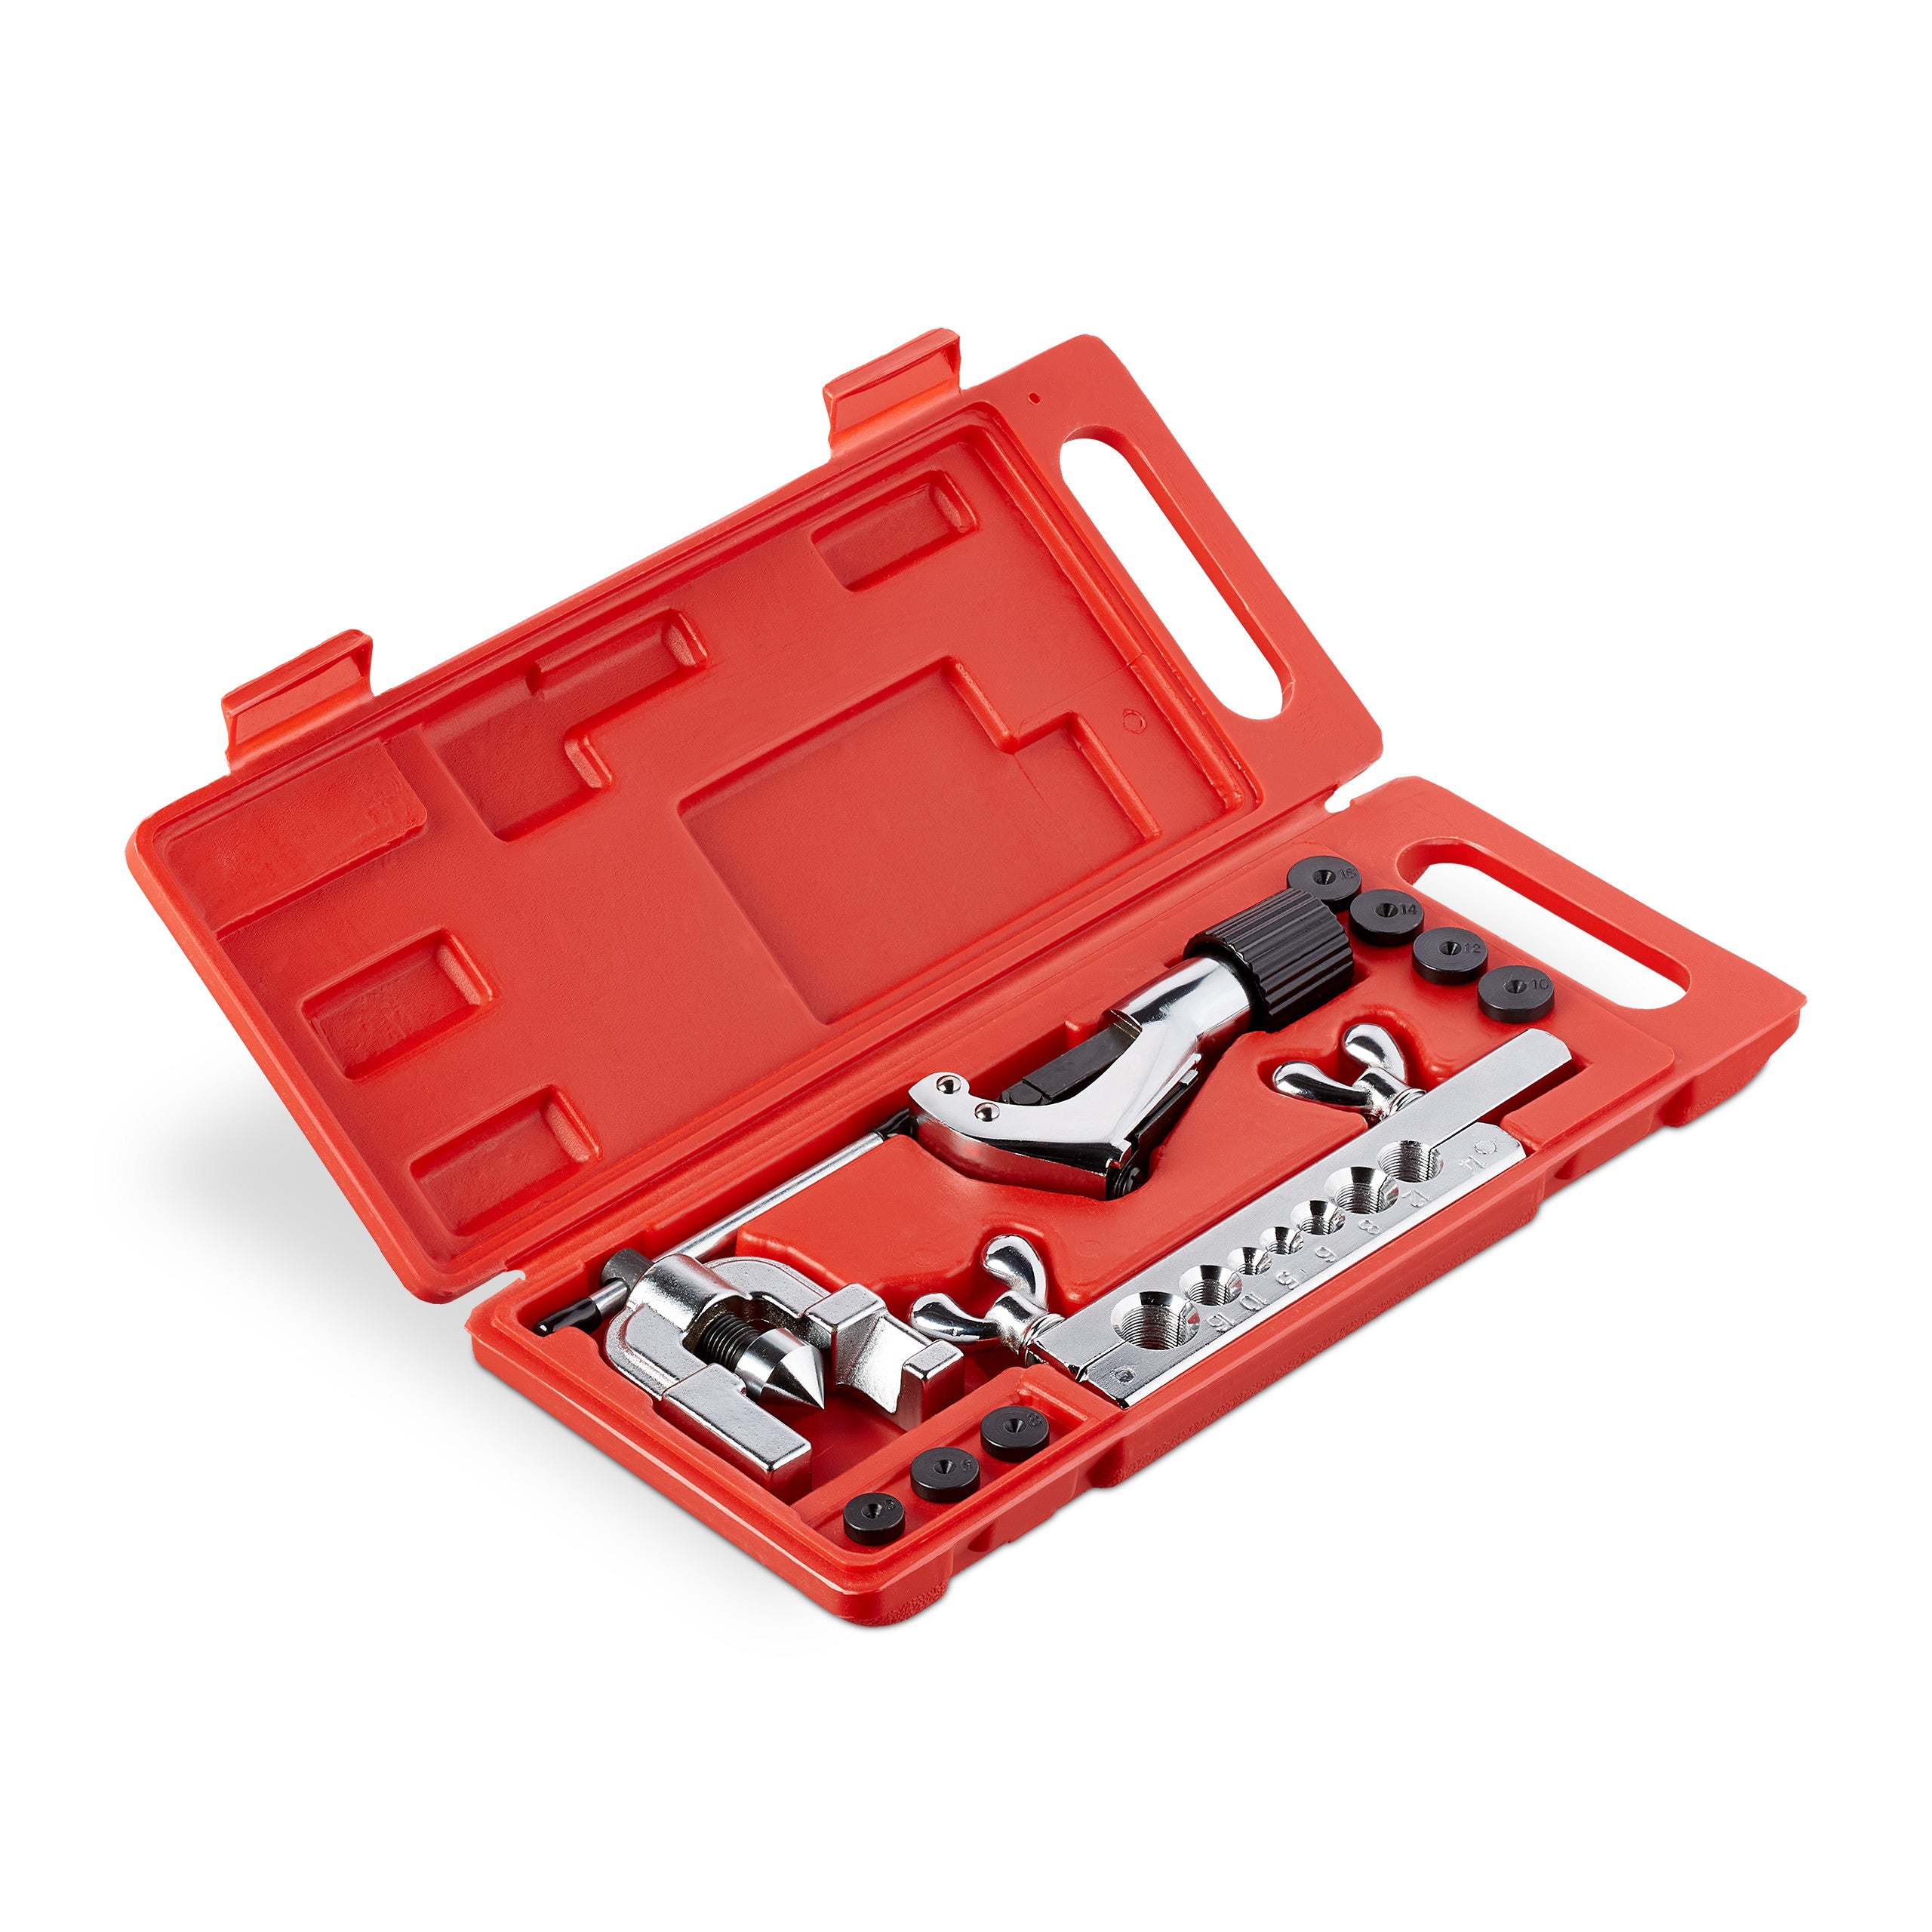 Outil d'évasement LIBRABOU, kit d'outils d'évasement Hylique, outil d' évasement en cuivre, outil